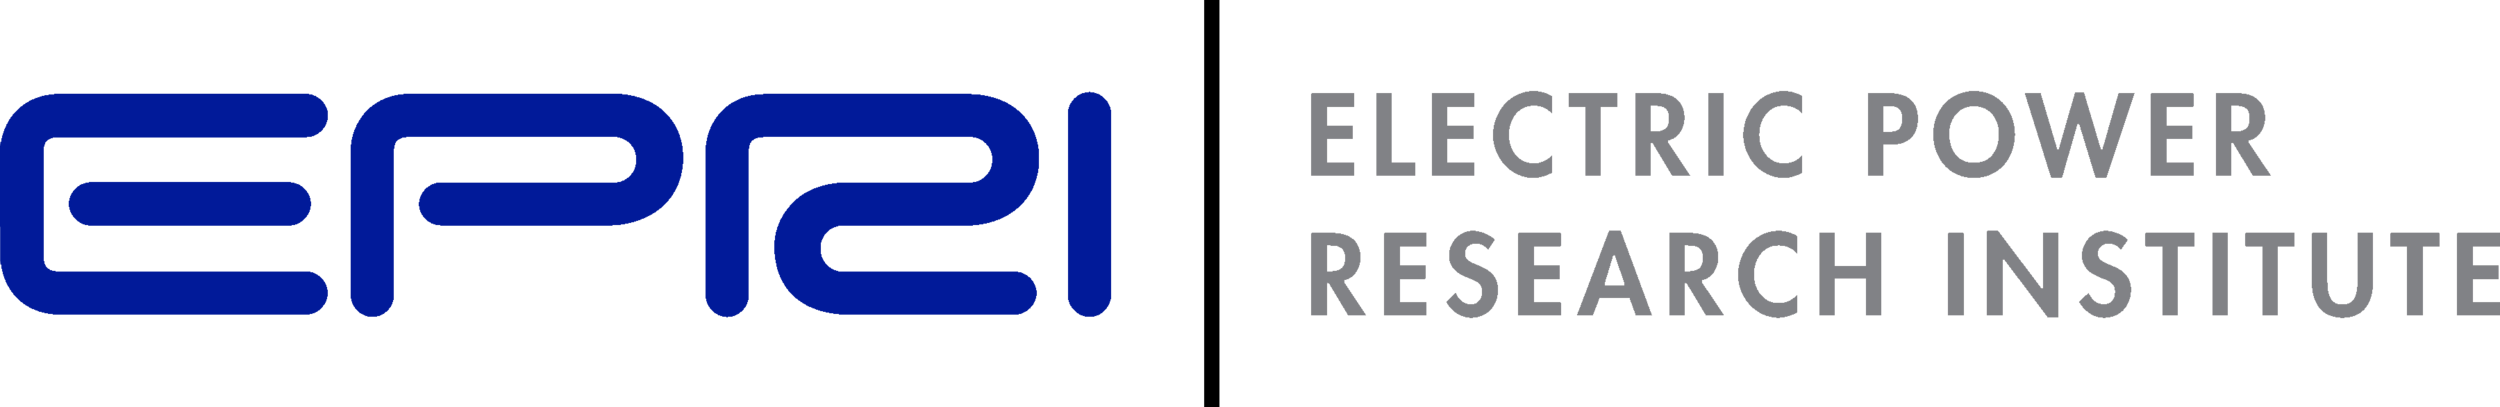 EPRI-logo.png